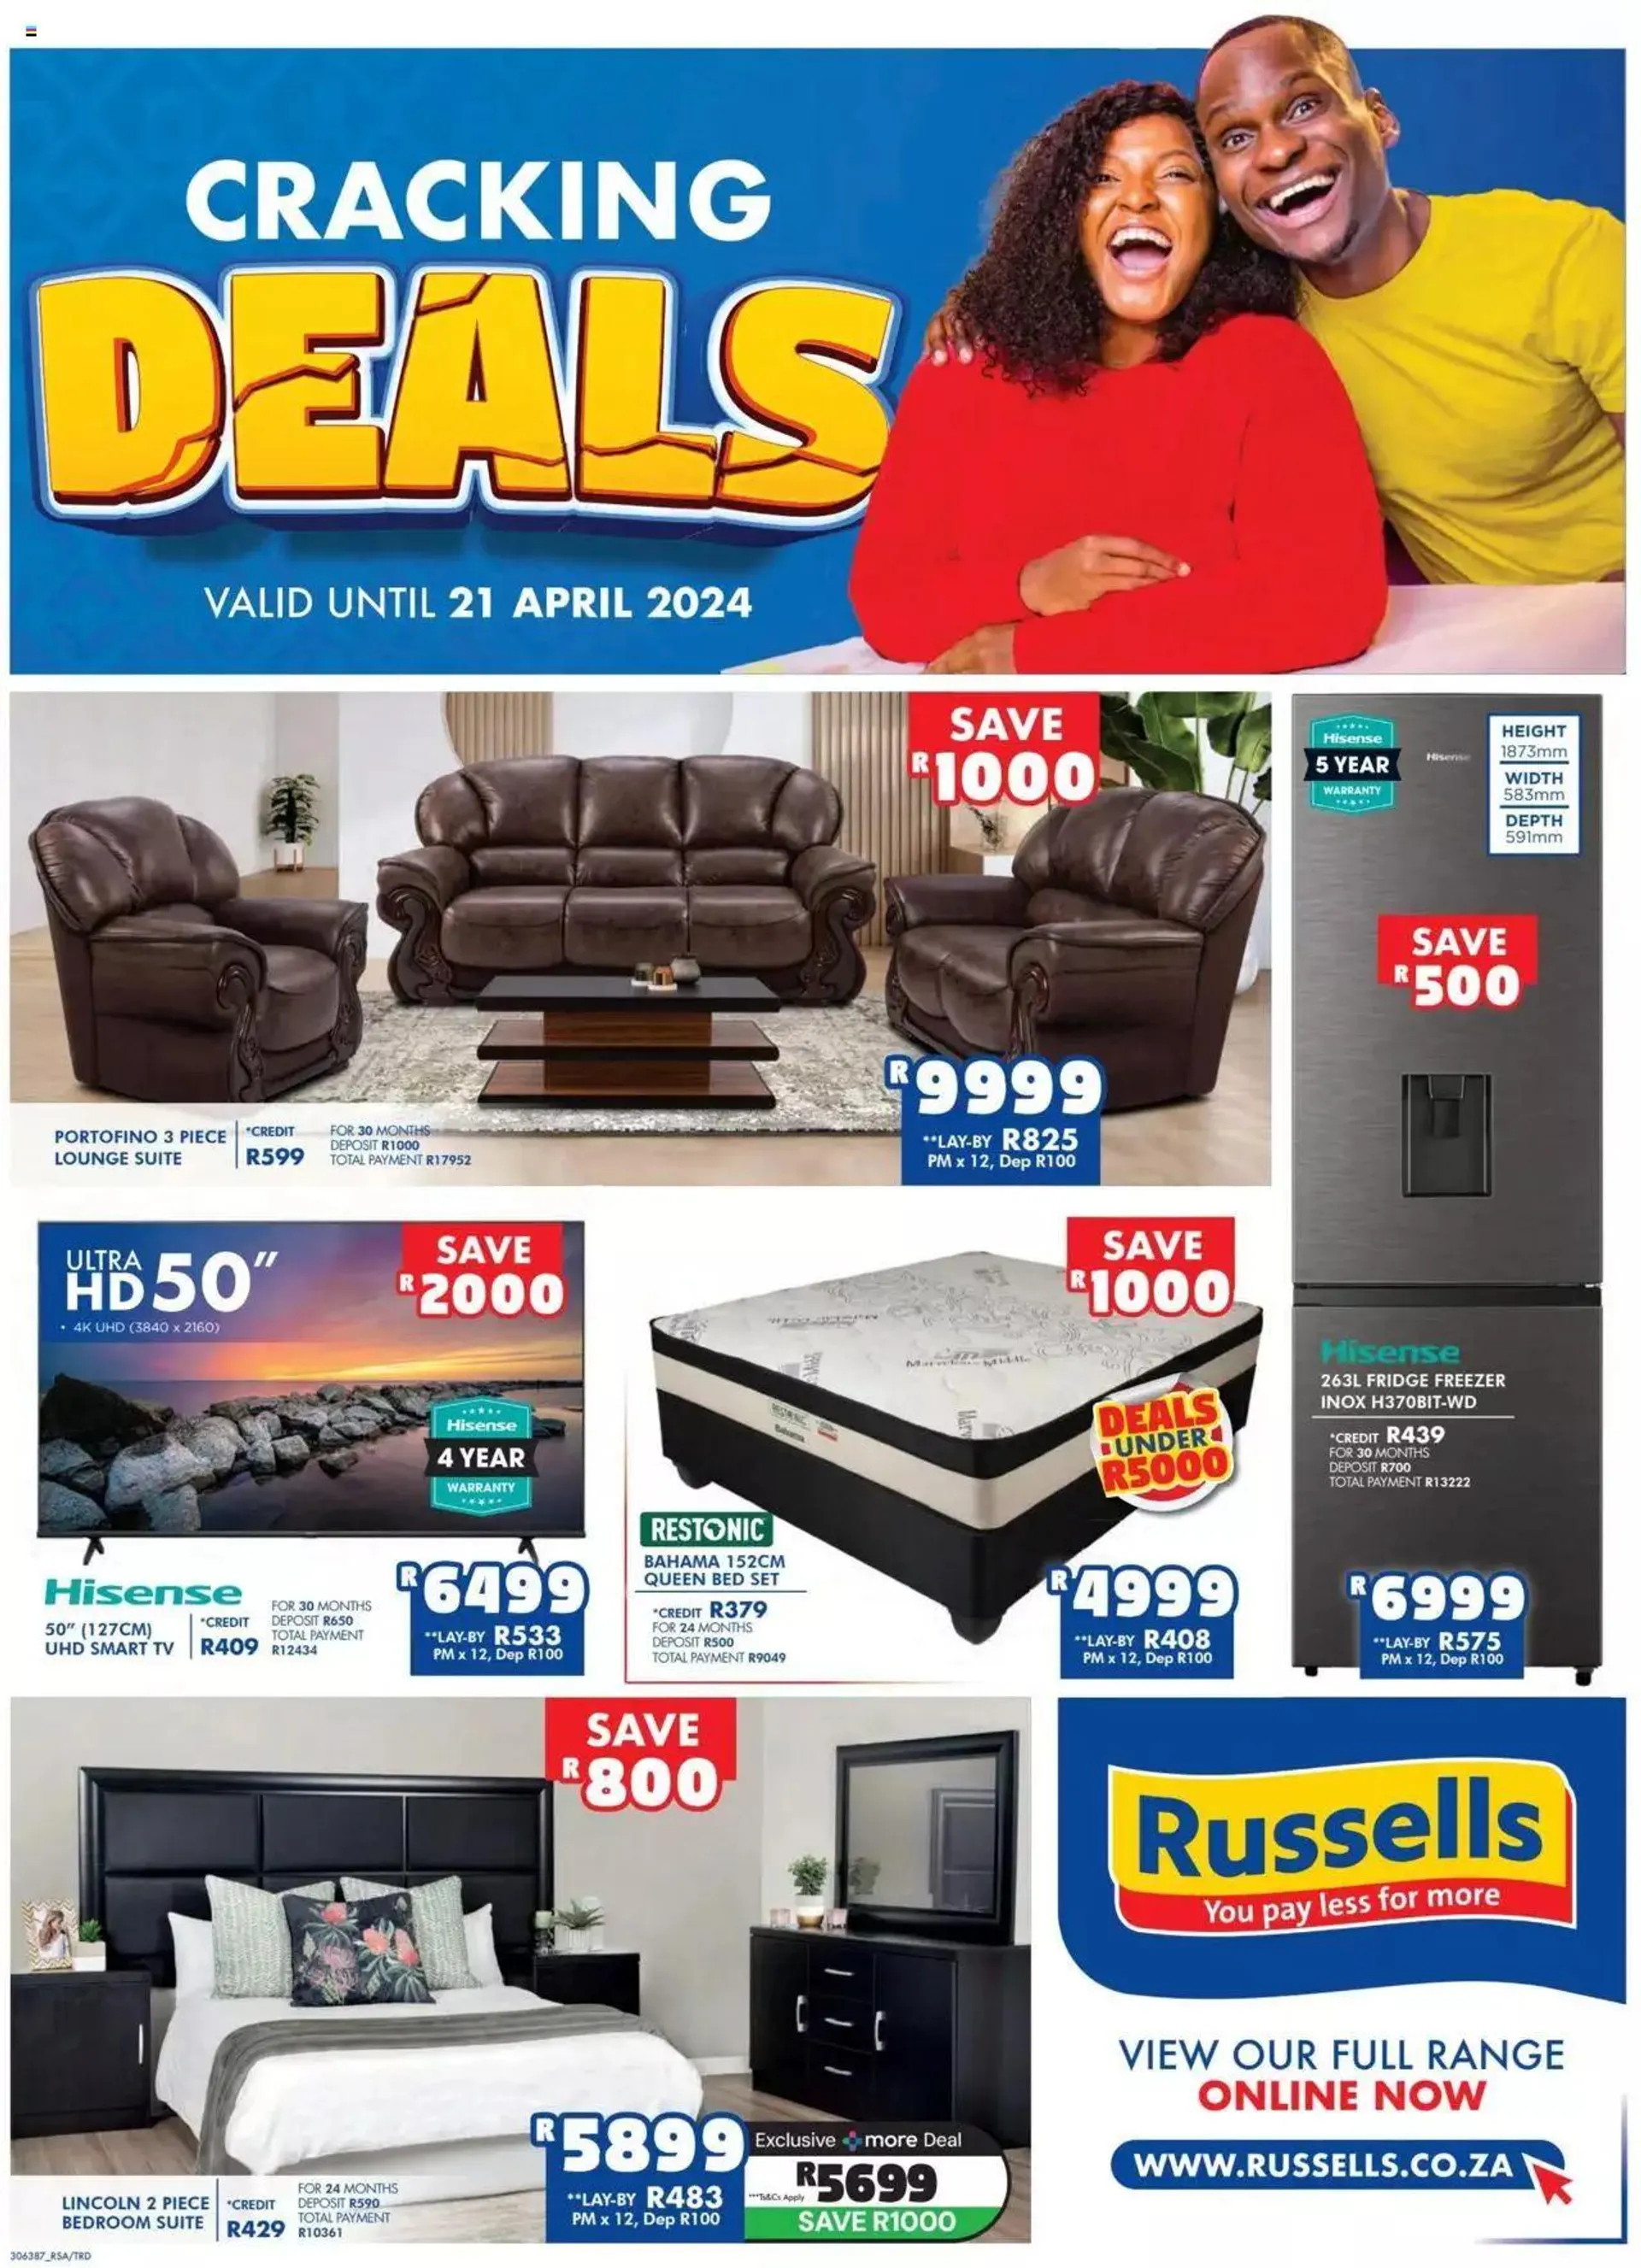 Russells Specials - 8 April 21 April 2024 - Page 1